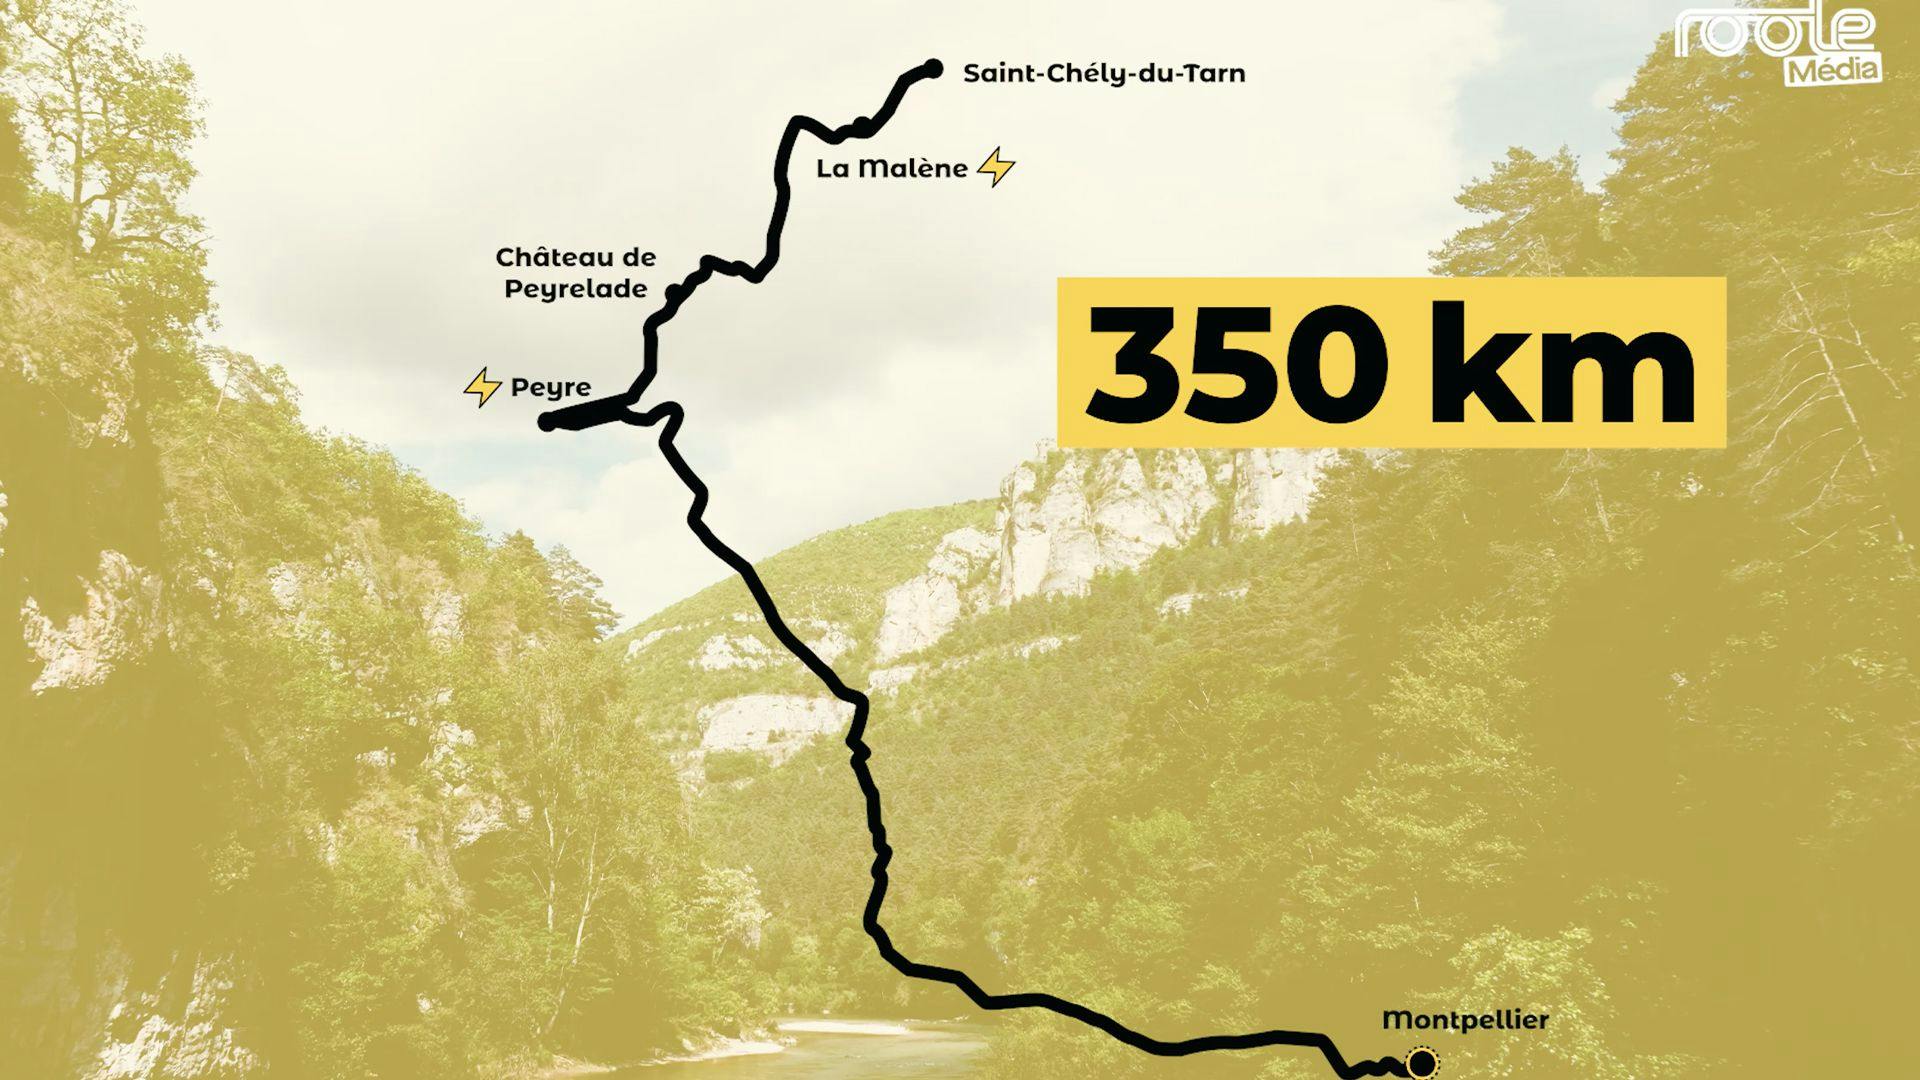 Notre itinéraire de road trip dans les Gorges du Tarn, de Peyre à Saint-Chély-du-Tarn. 